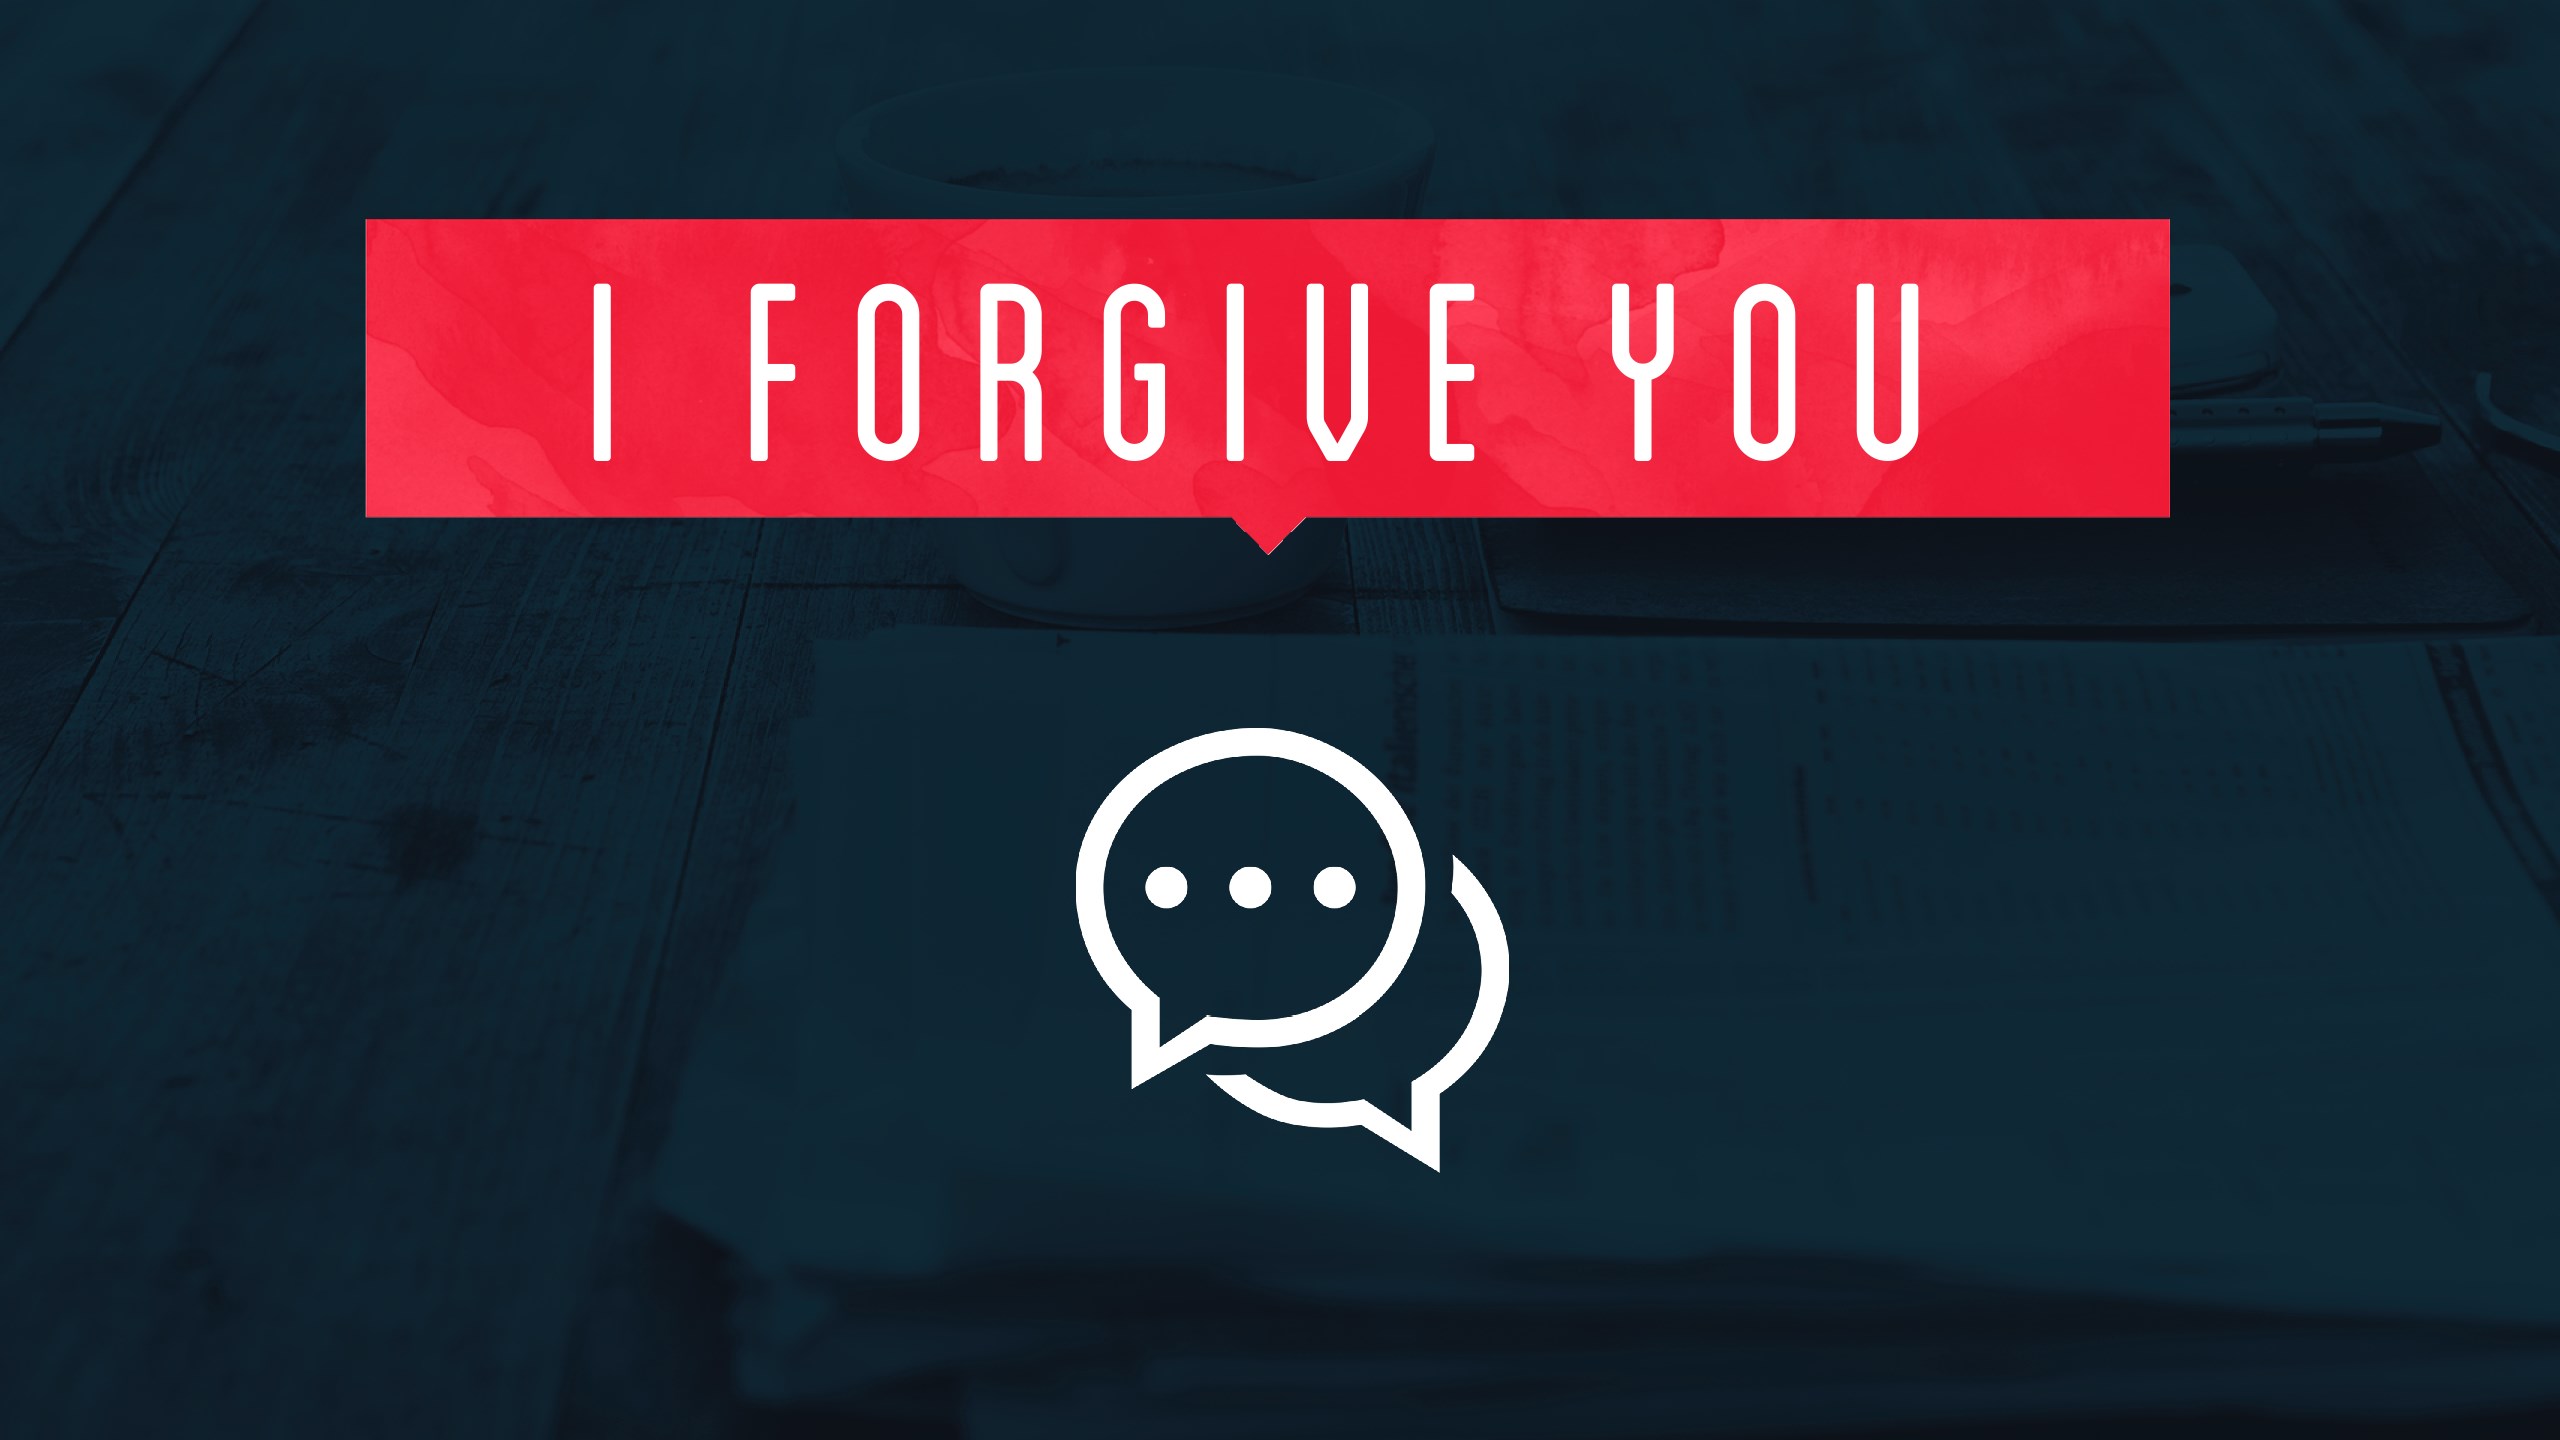 I Forgive You - Restoring Relationships